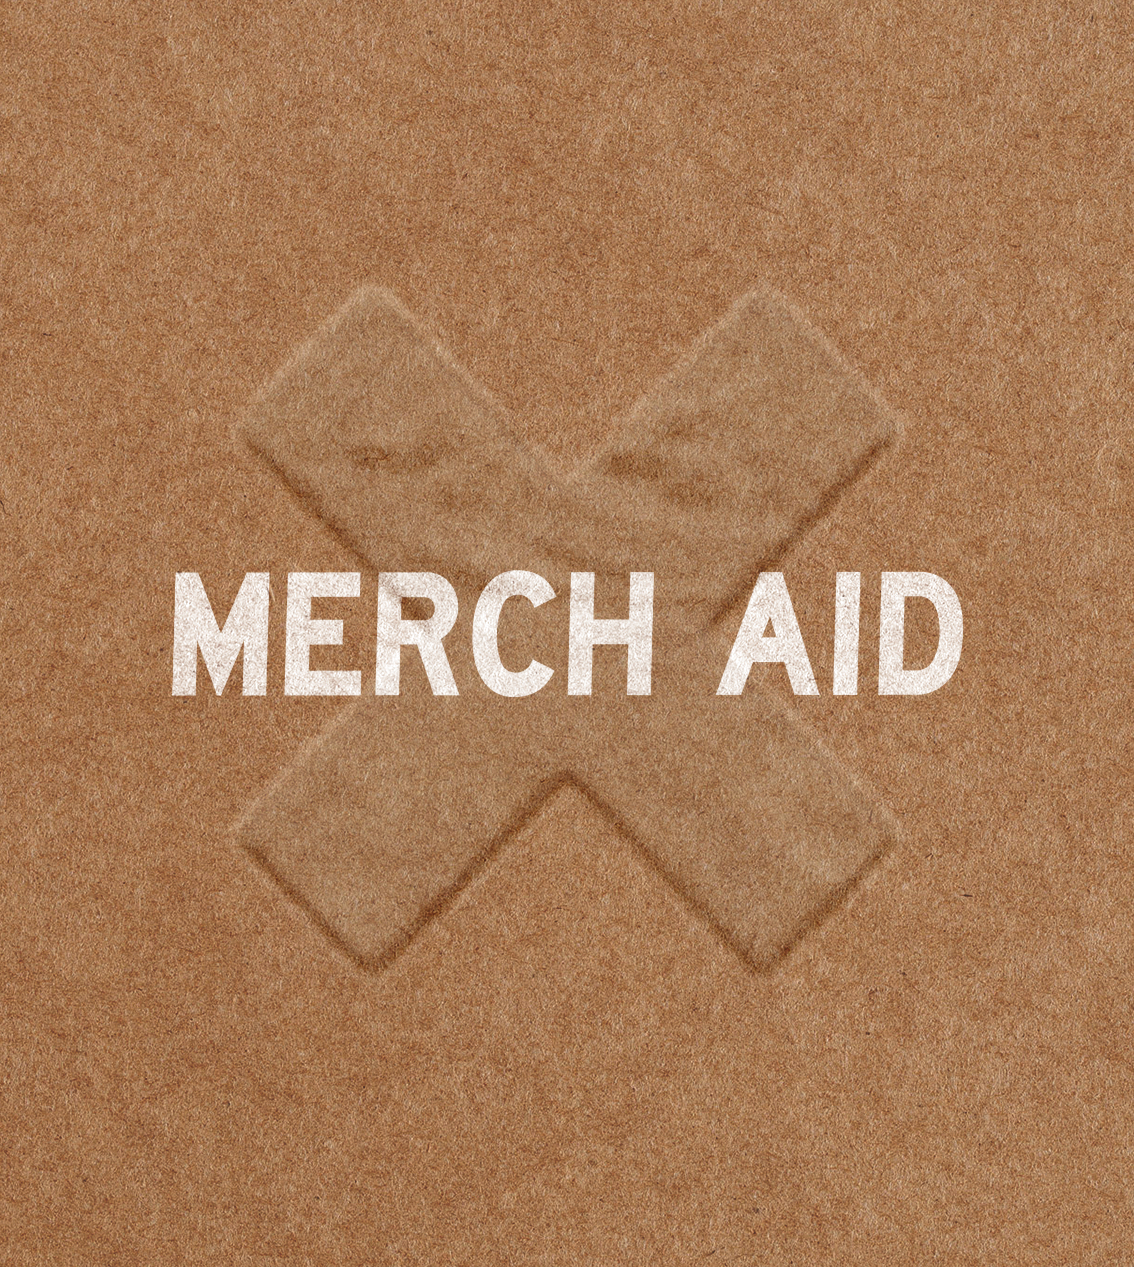 Merch Aid